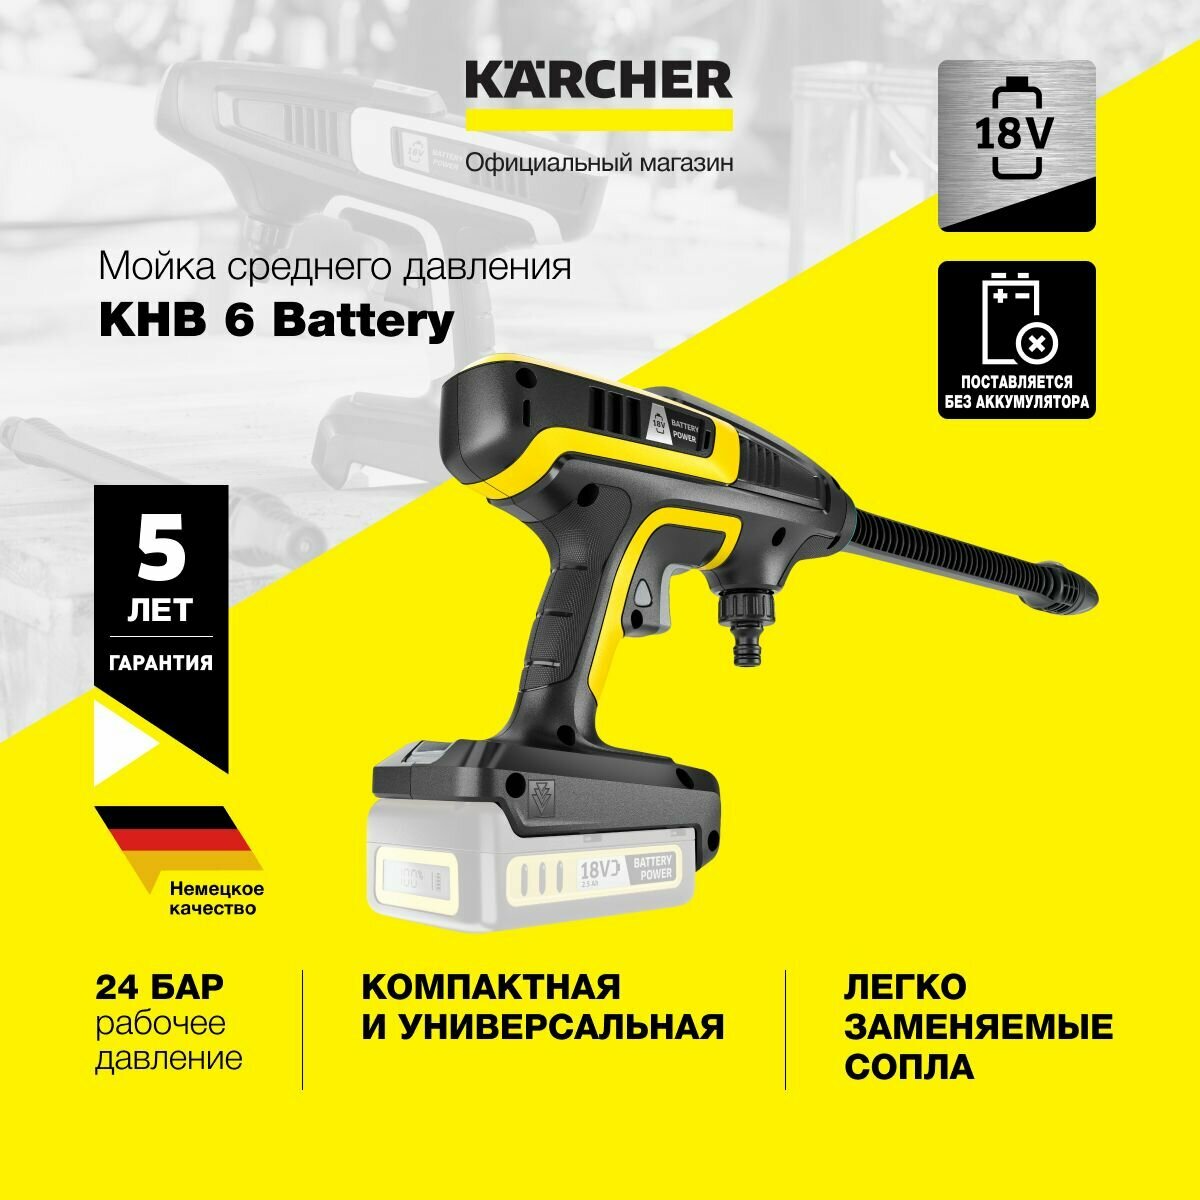 Минимойка Karcher KHB 6 Battery Int